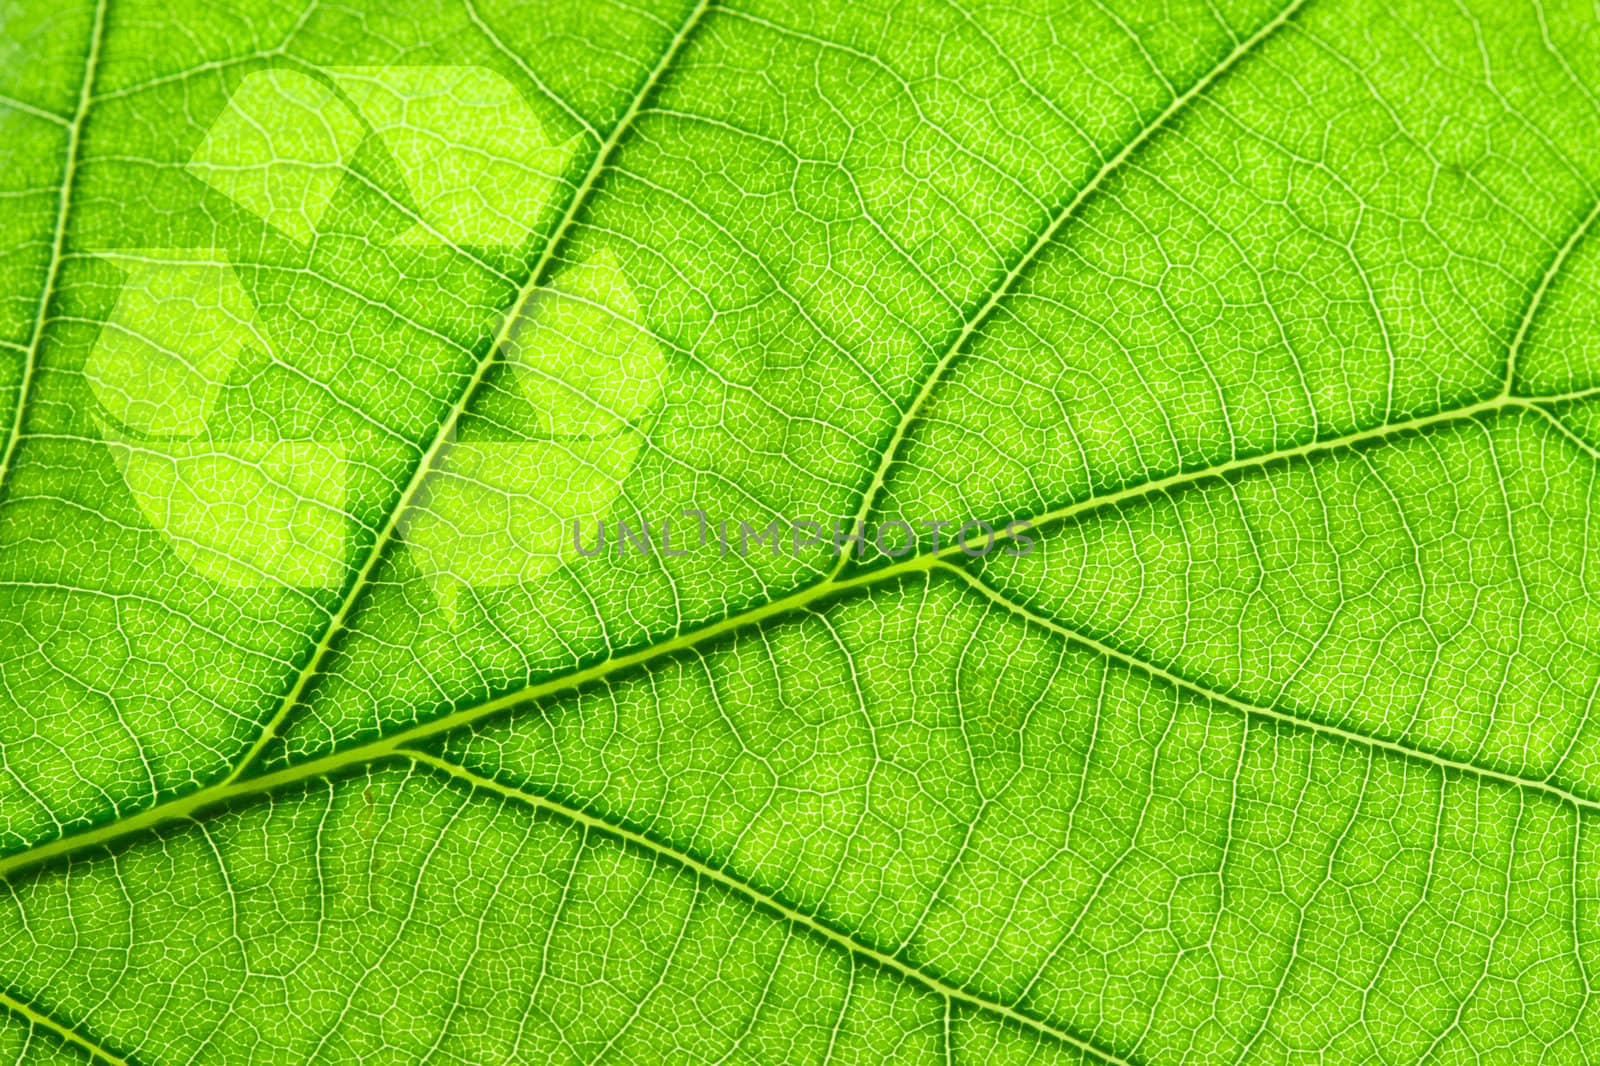 Recycling symbol on leaf by dimol